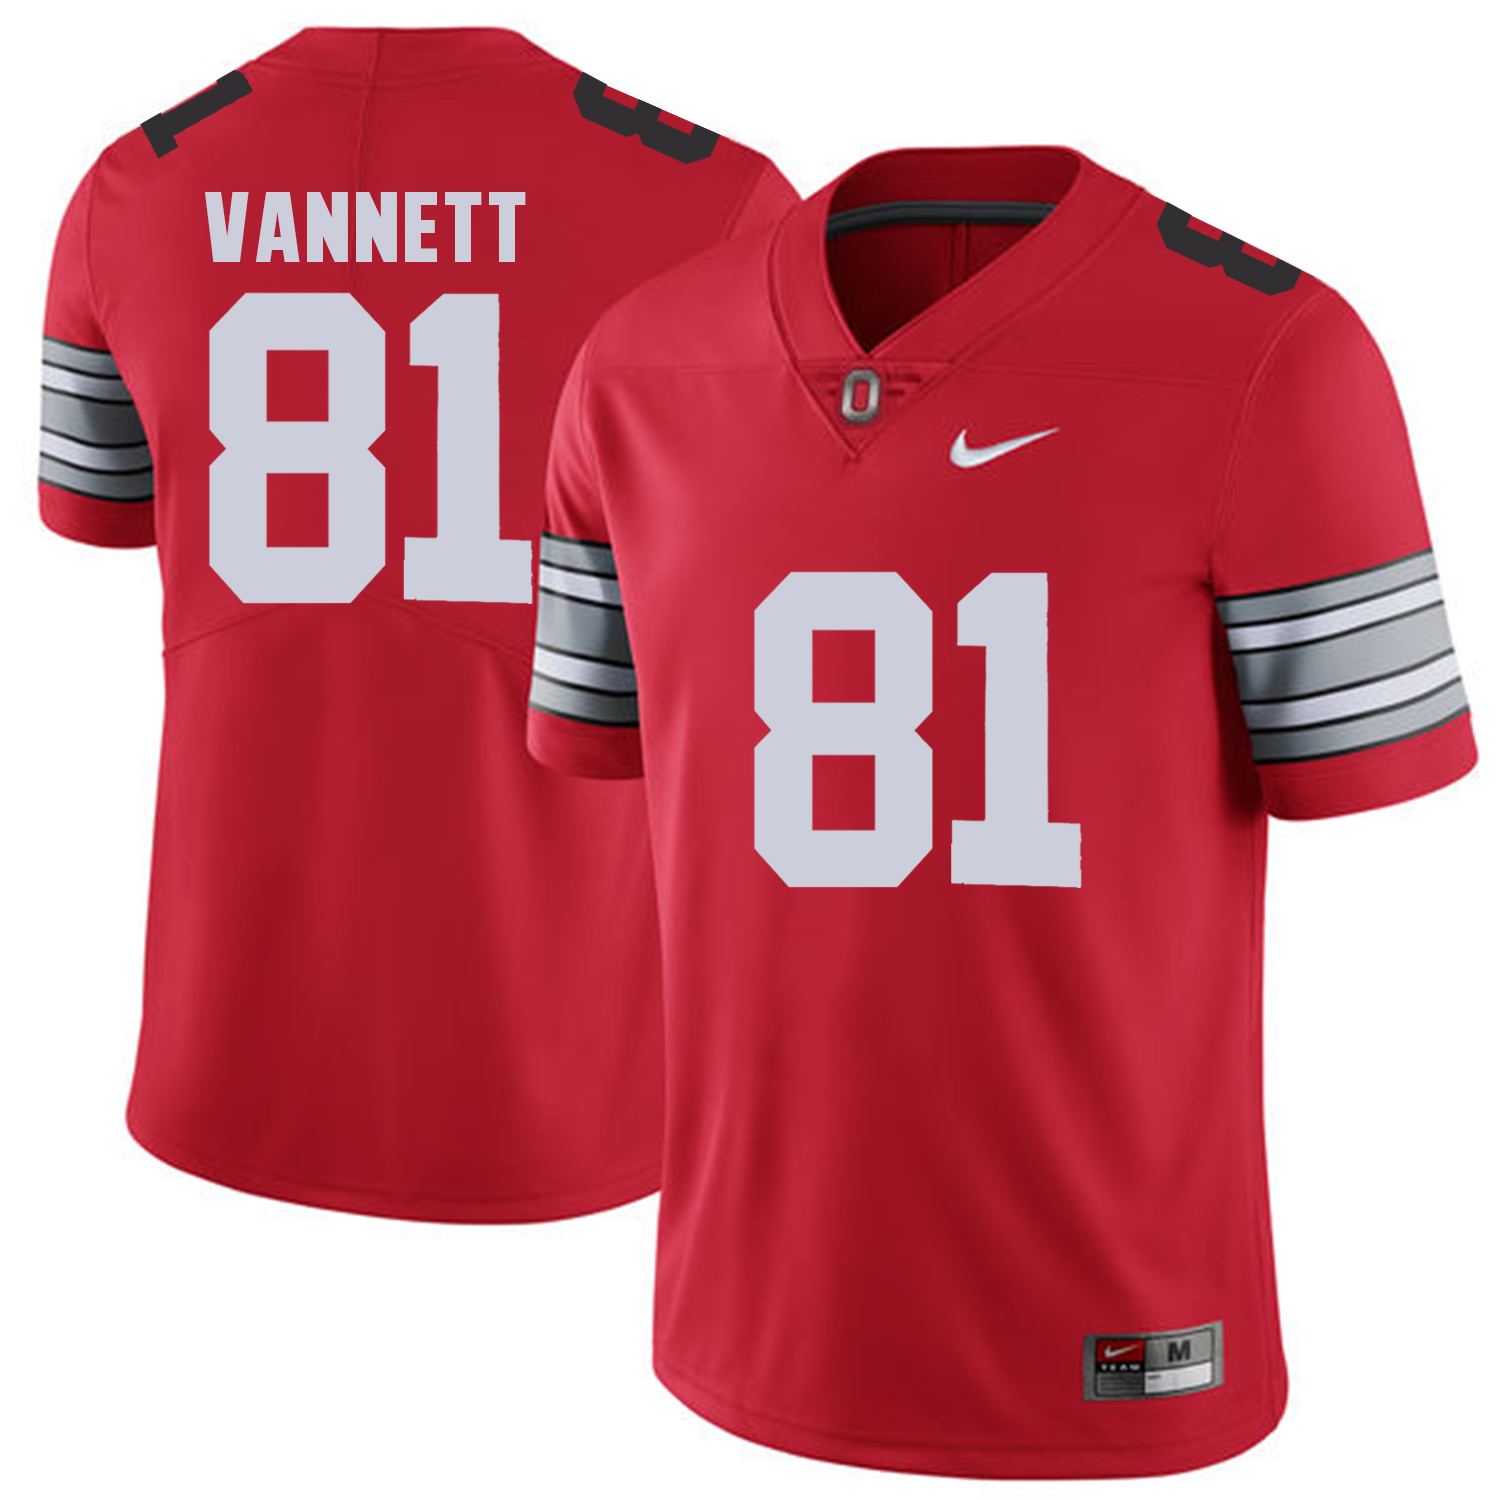 Men Ohio State 81 Vannett Red Customized NCAA Jerseys